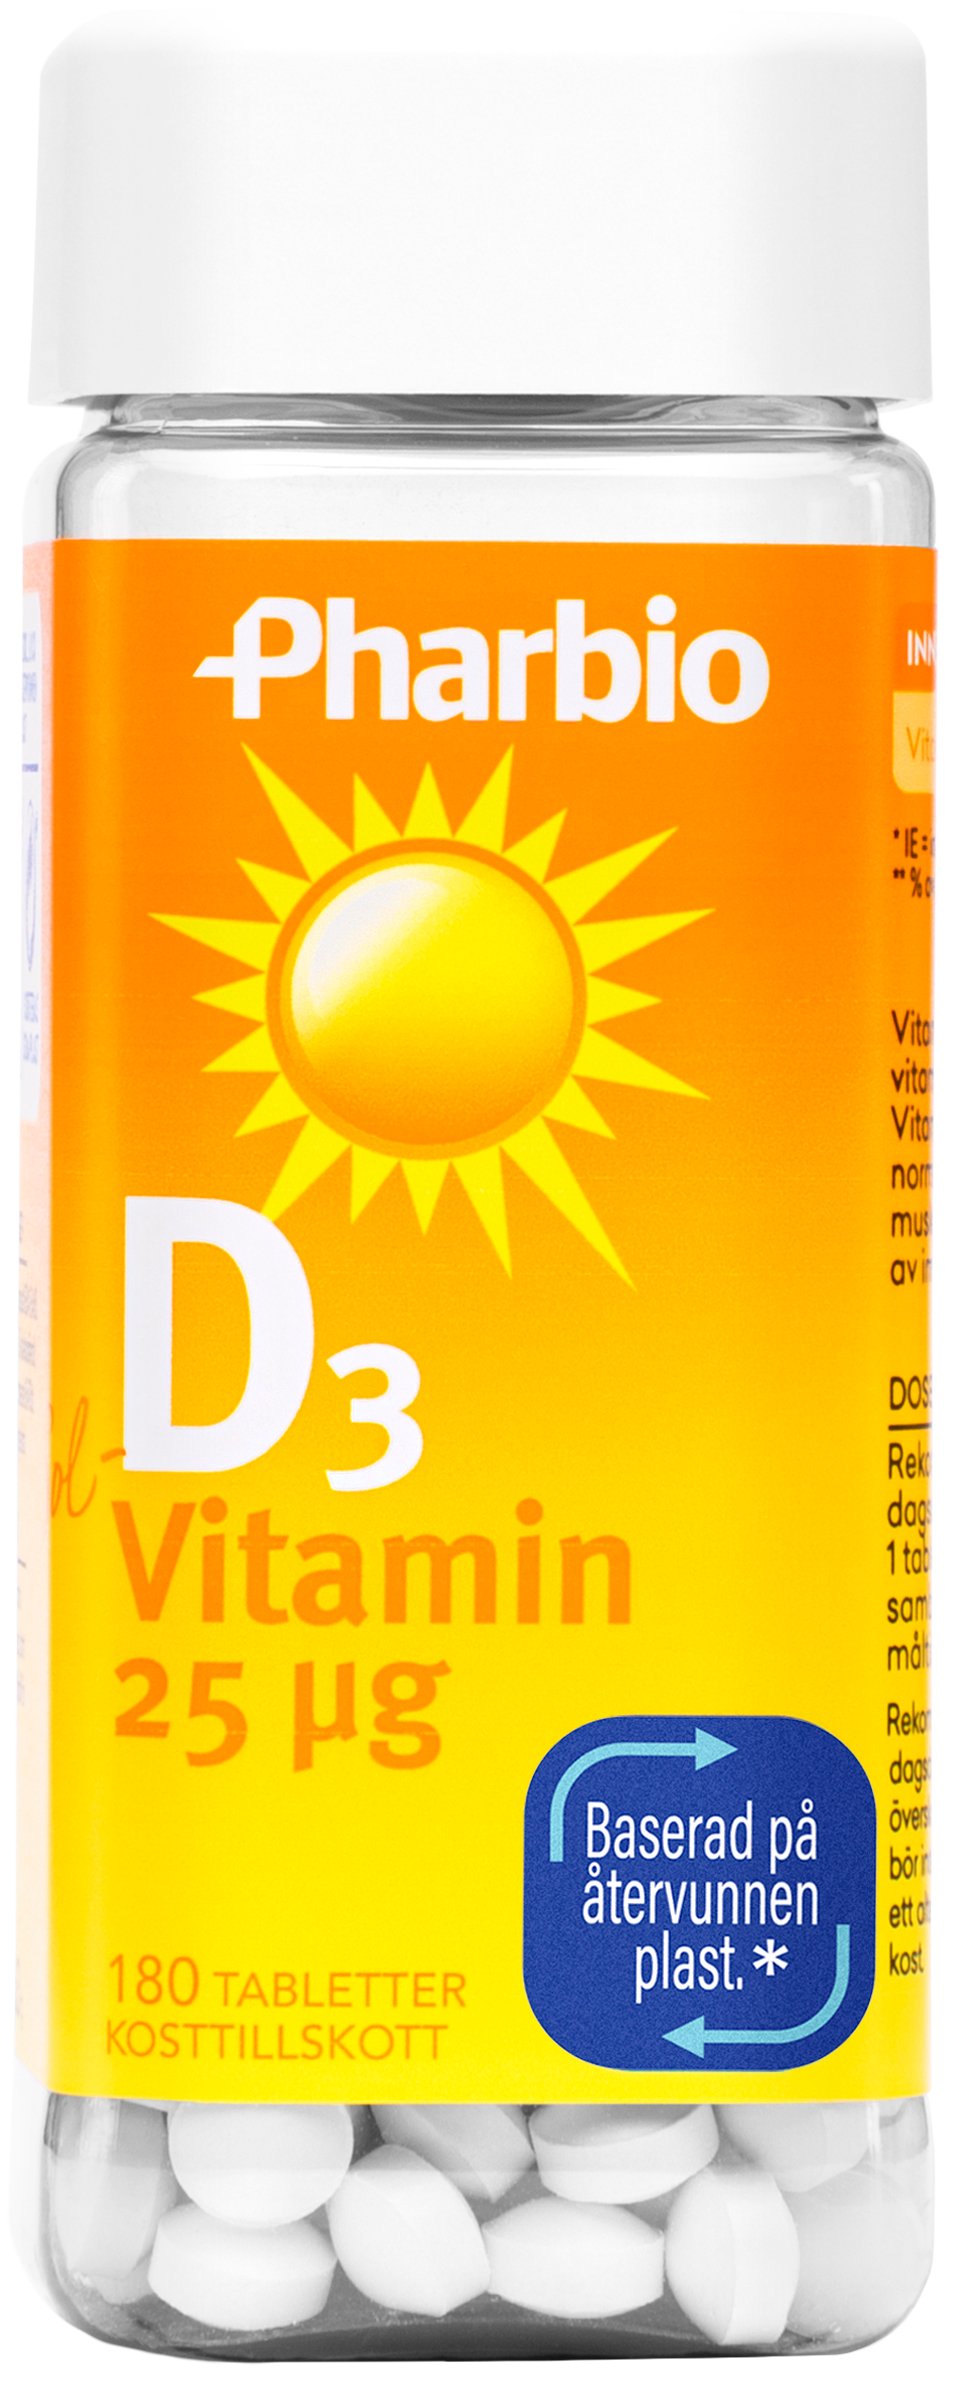 Pharbio D3 Vitamin 25 µg 180 tabletter